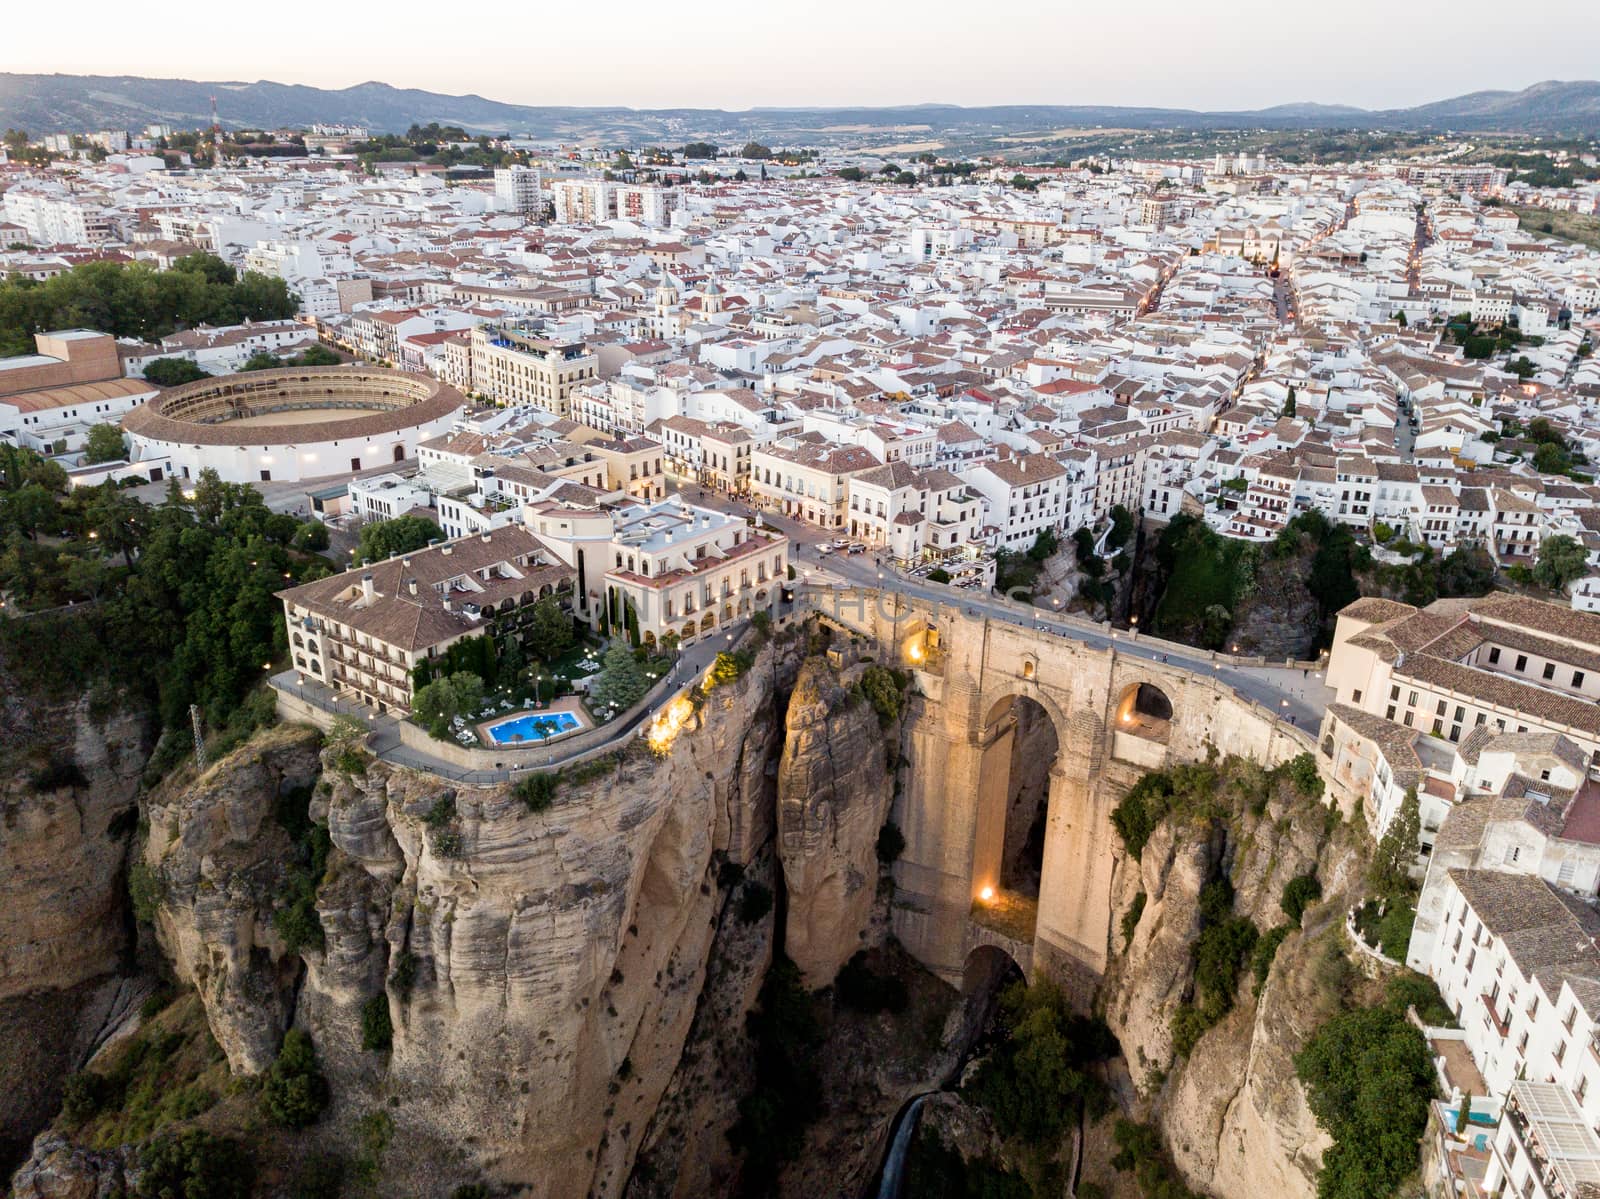 Aerial View of Bridge Puente Nuevo in Ronda, Spain by oliverfoerstner